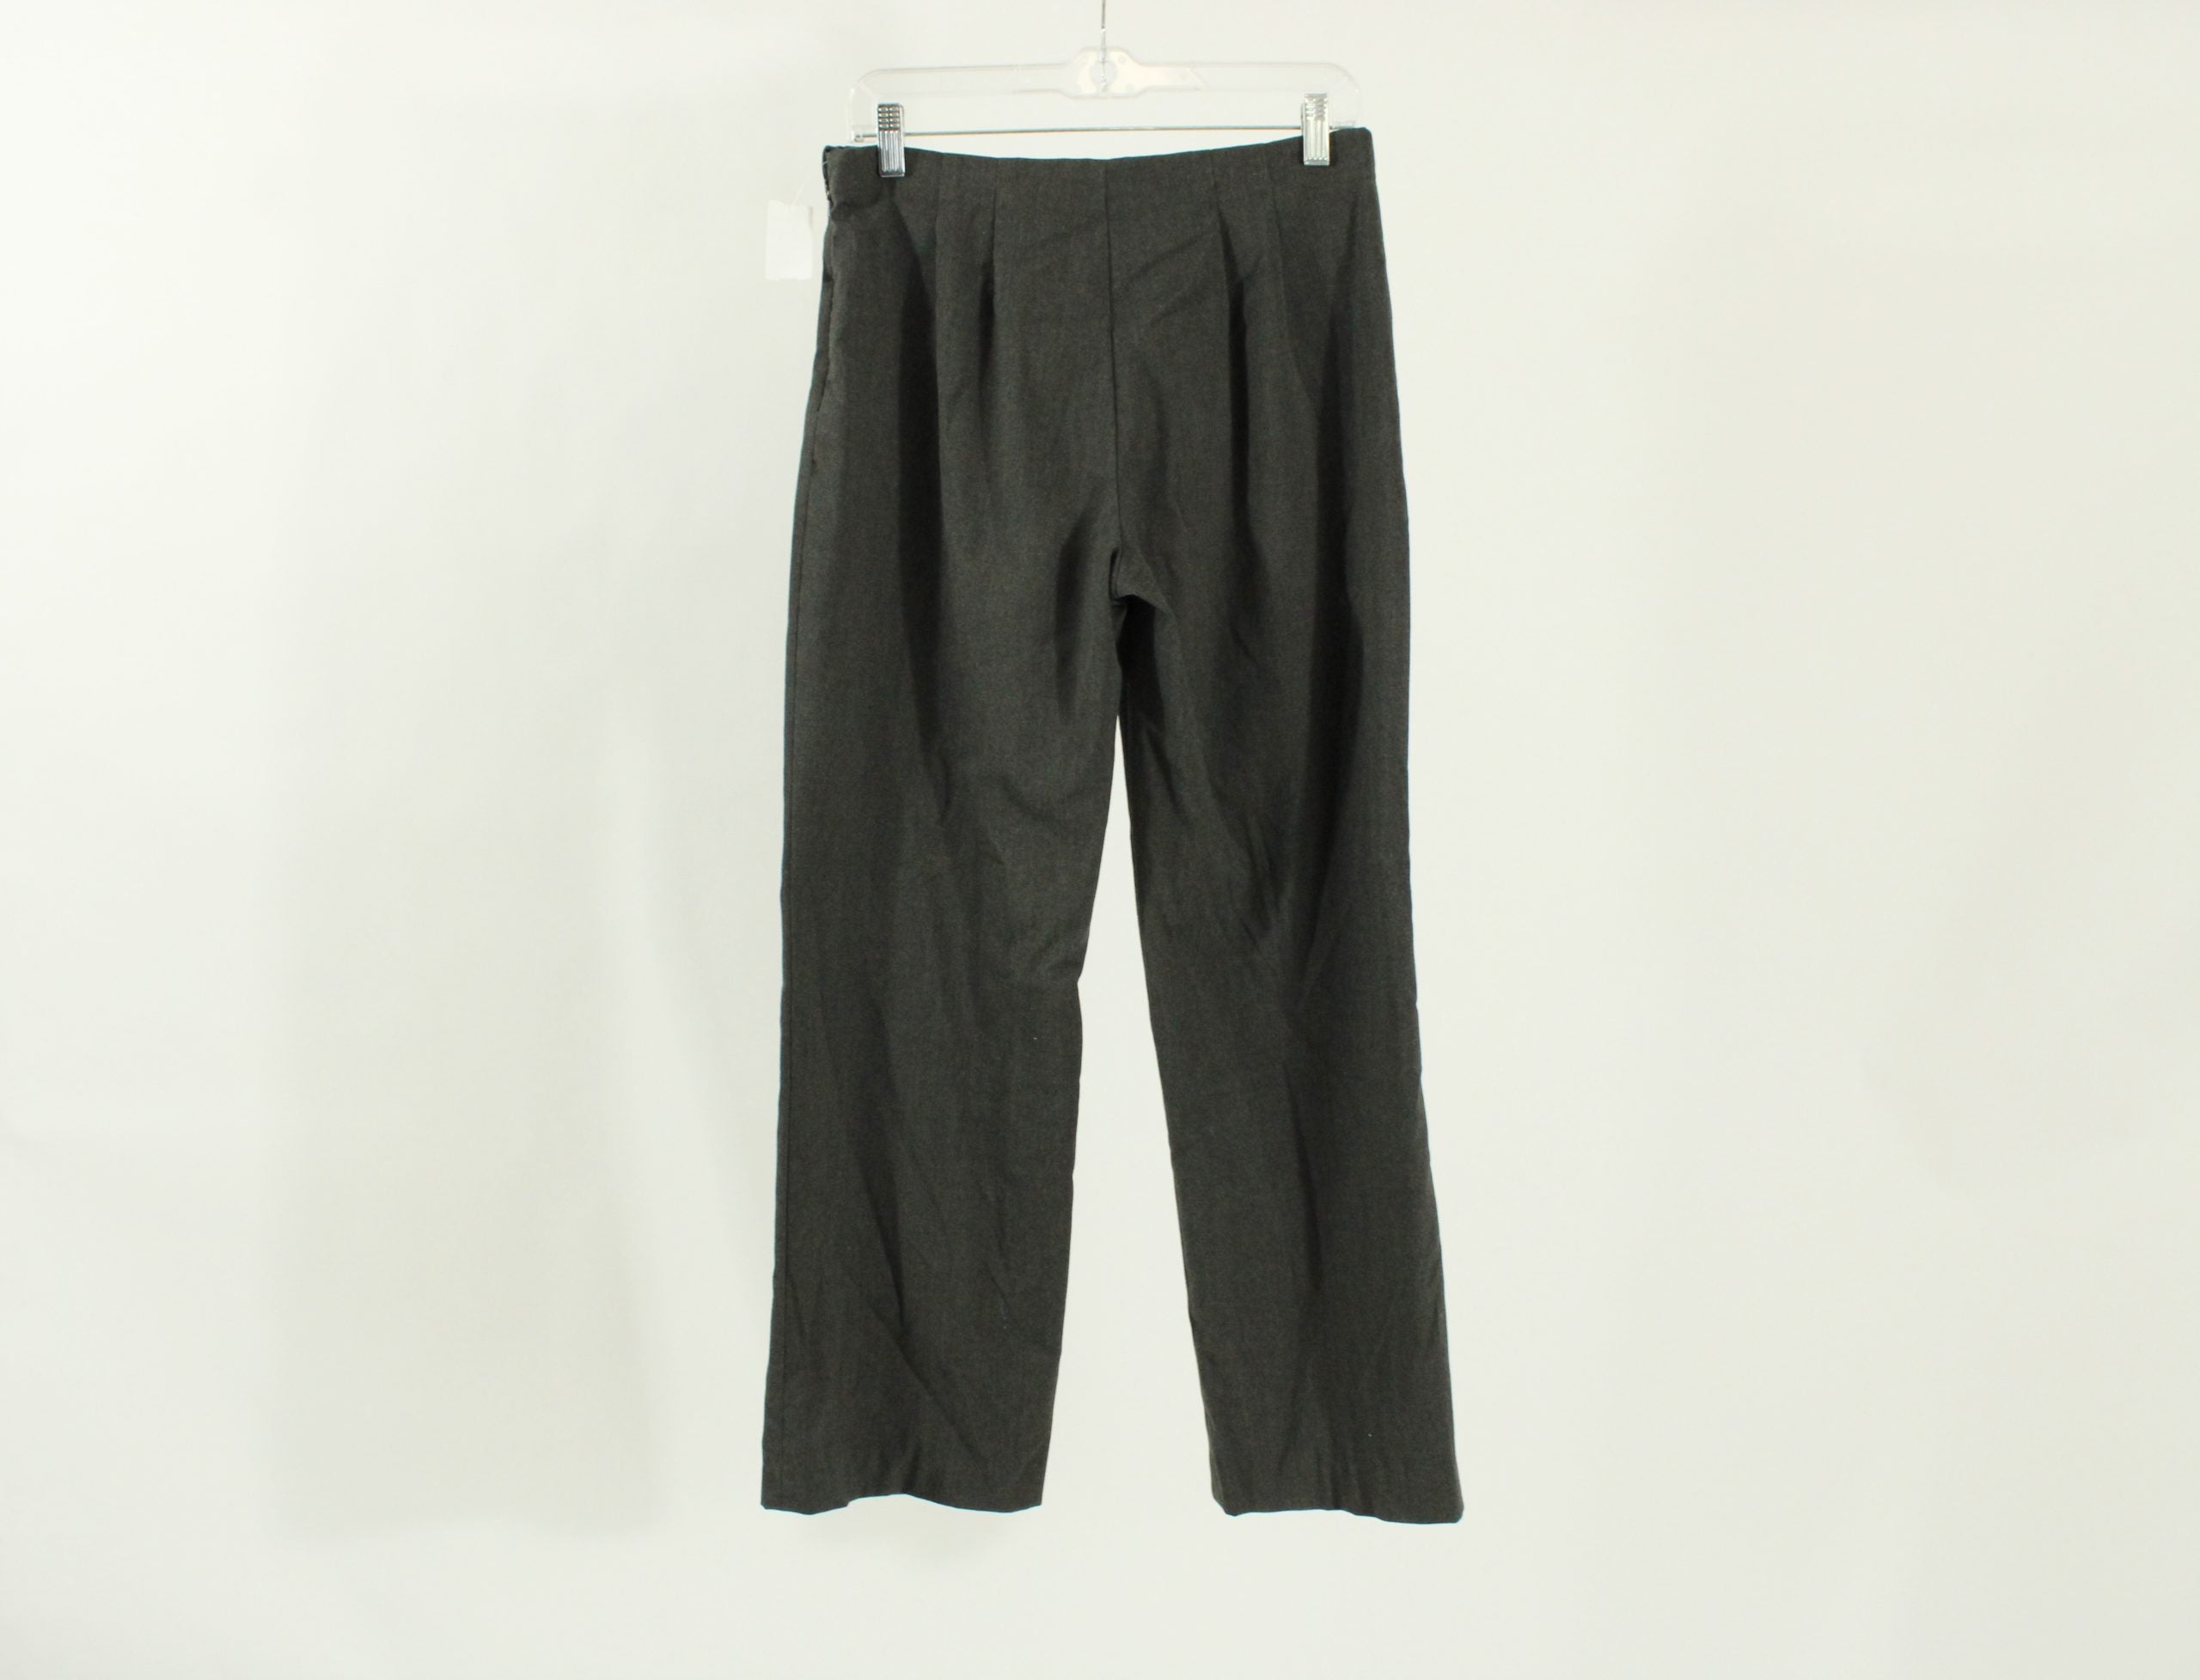 Coldwater Creek Gray Dress Pants | Size 6 Petite